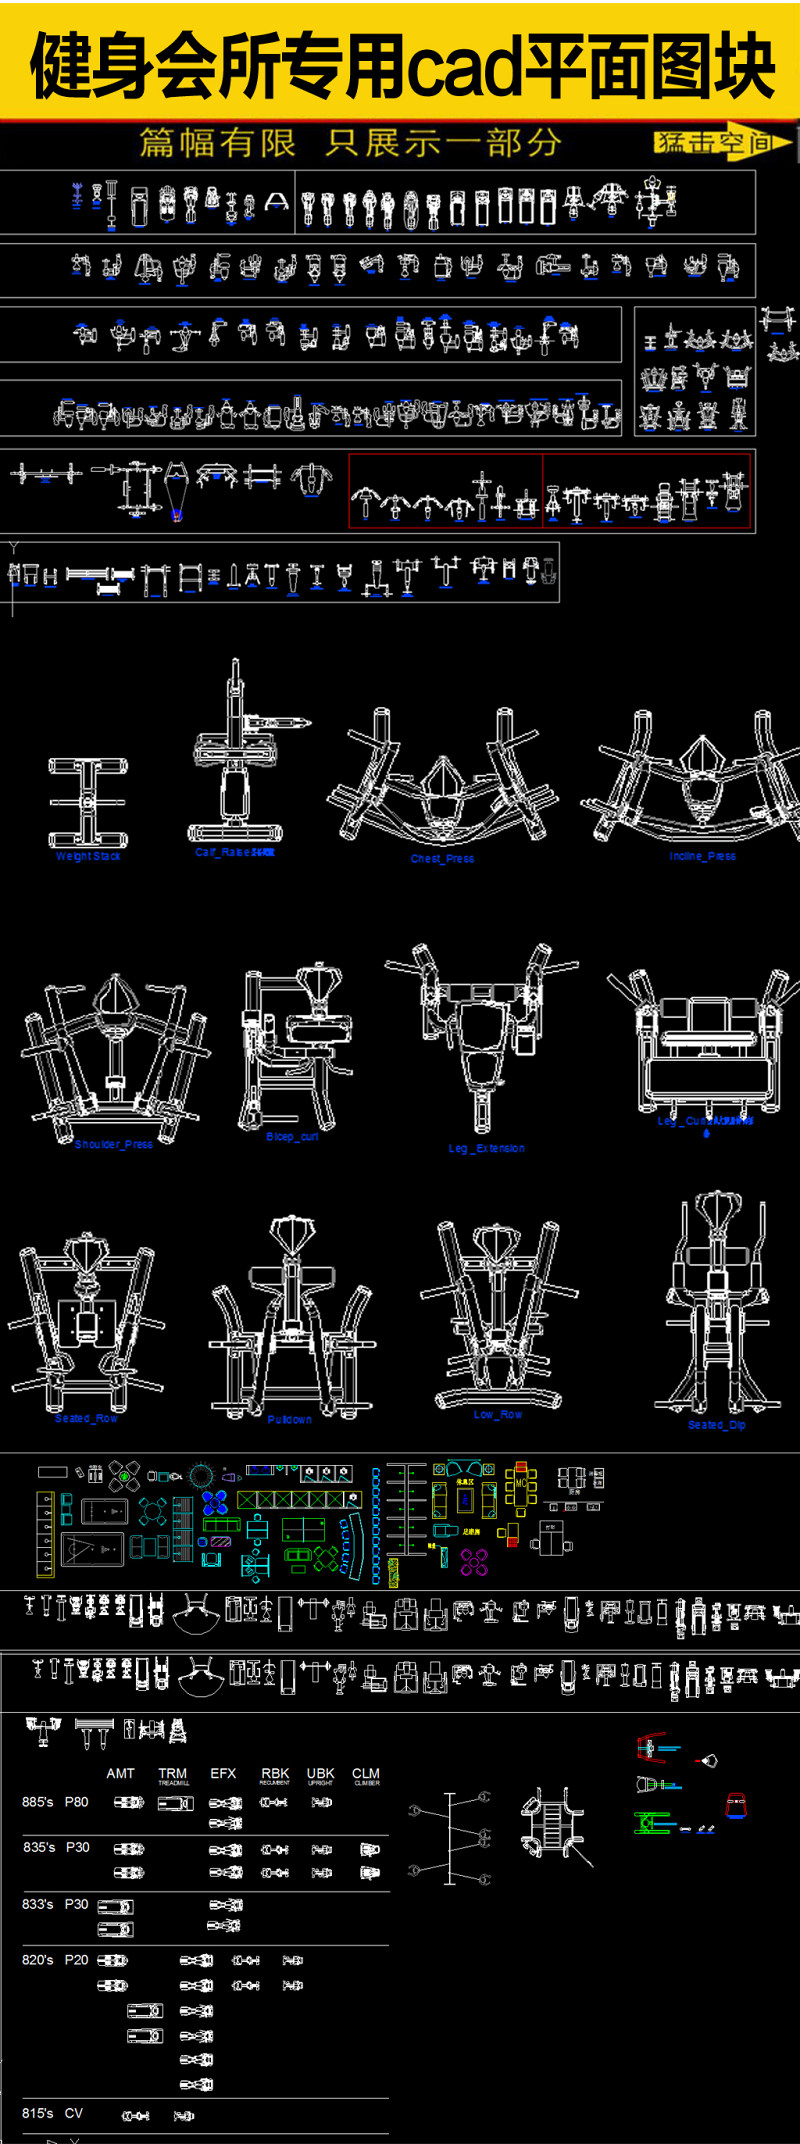 原创健身瑜珈会所专用器材CAD图库大全-版权可商用